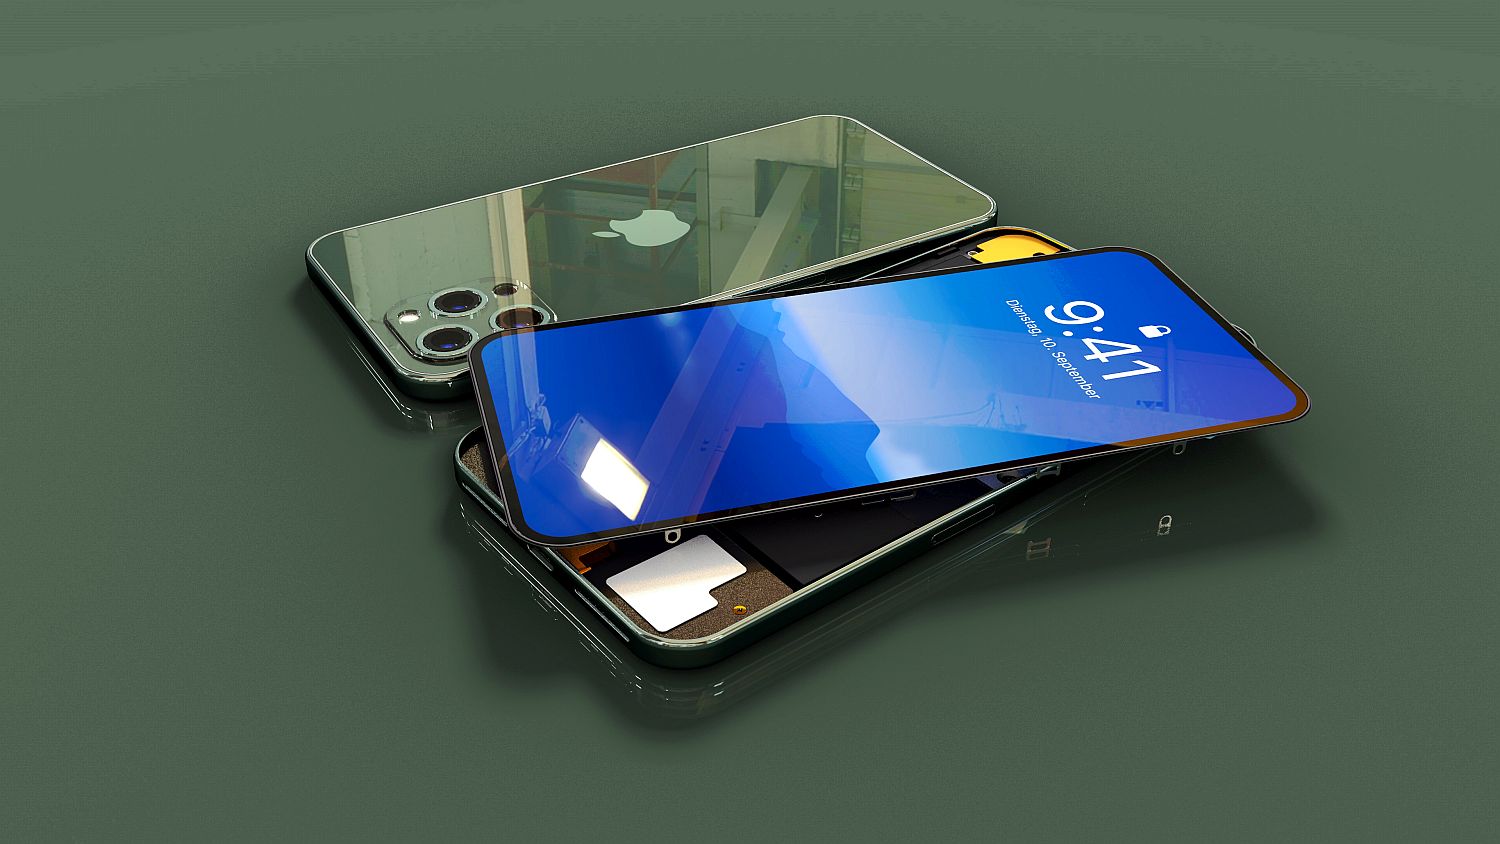 12 Pro Max Iphone 12 Prototype